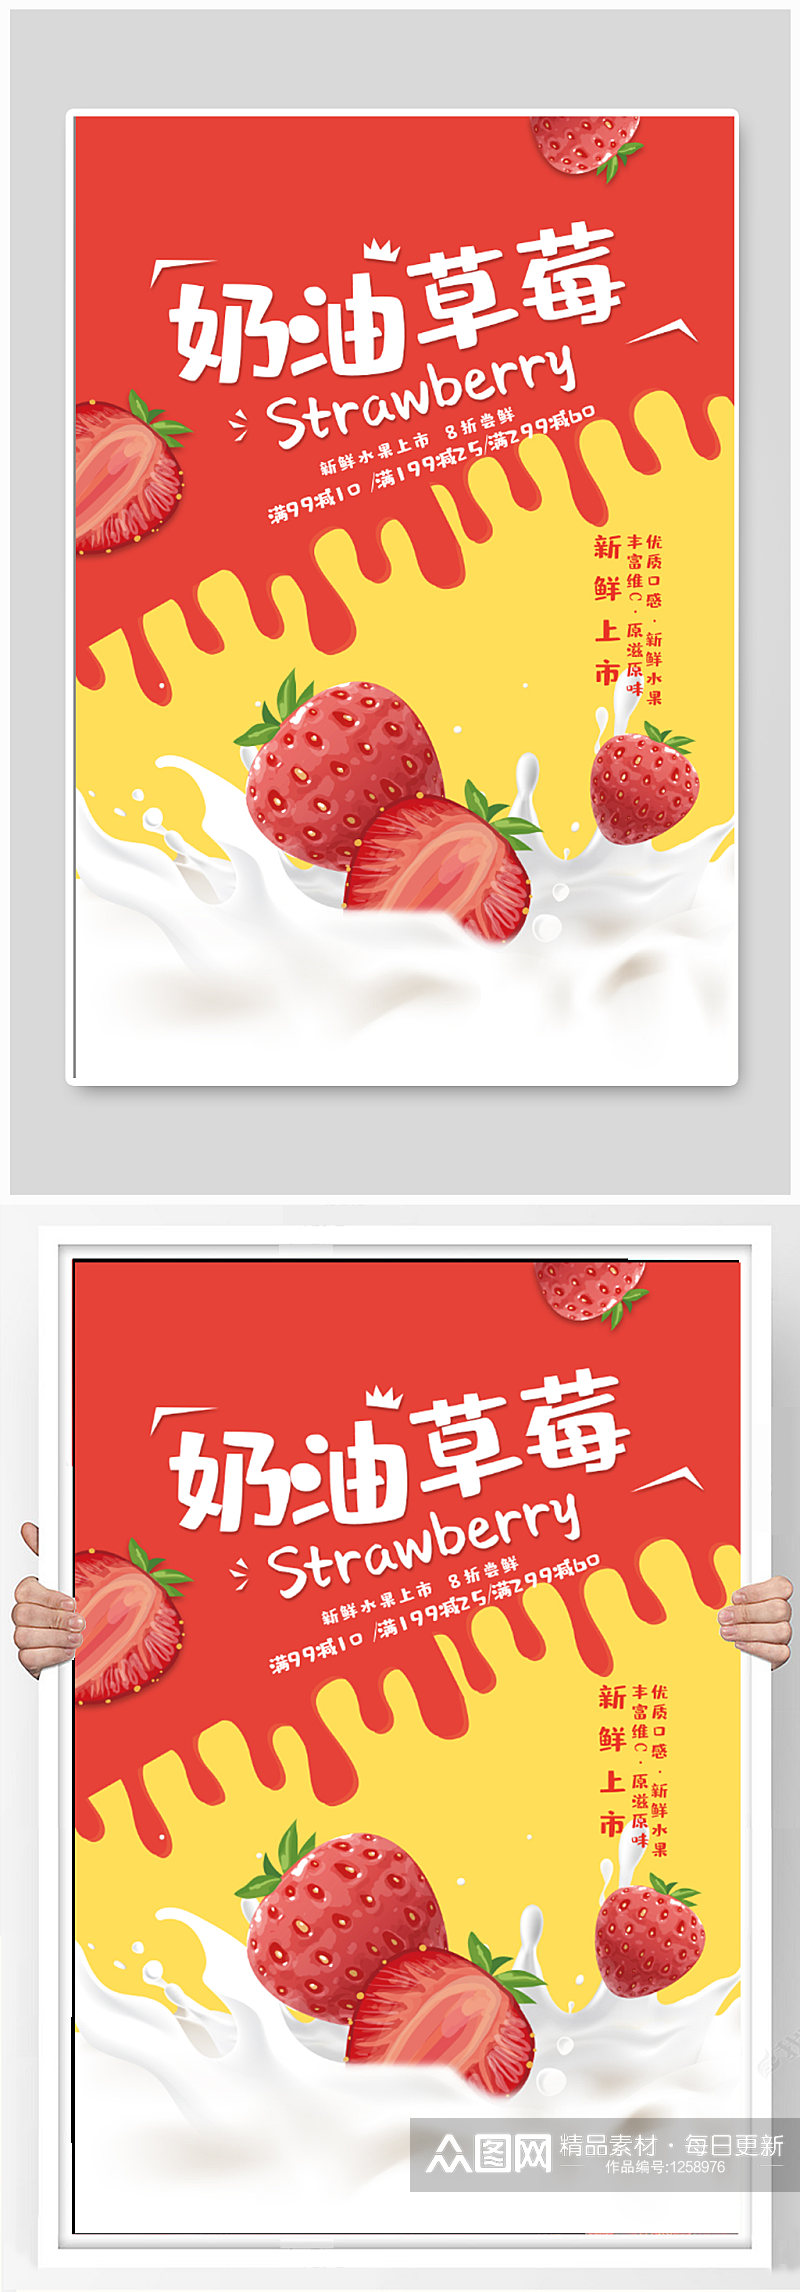 奶油草莓水果超市促销海报素材